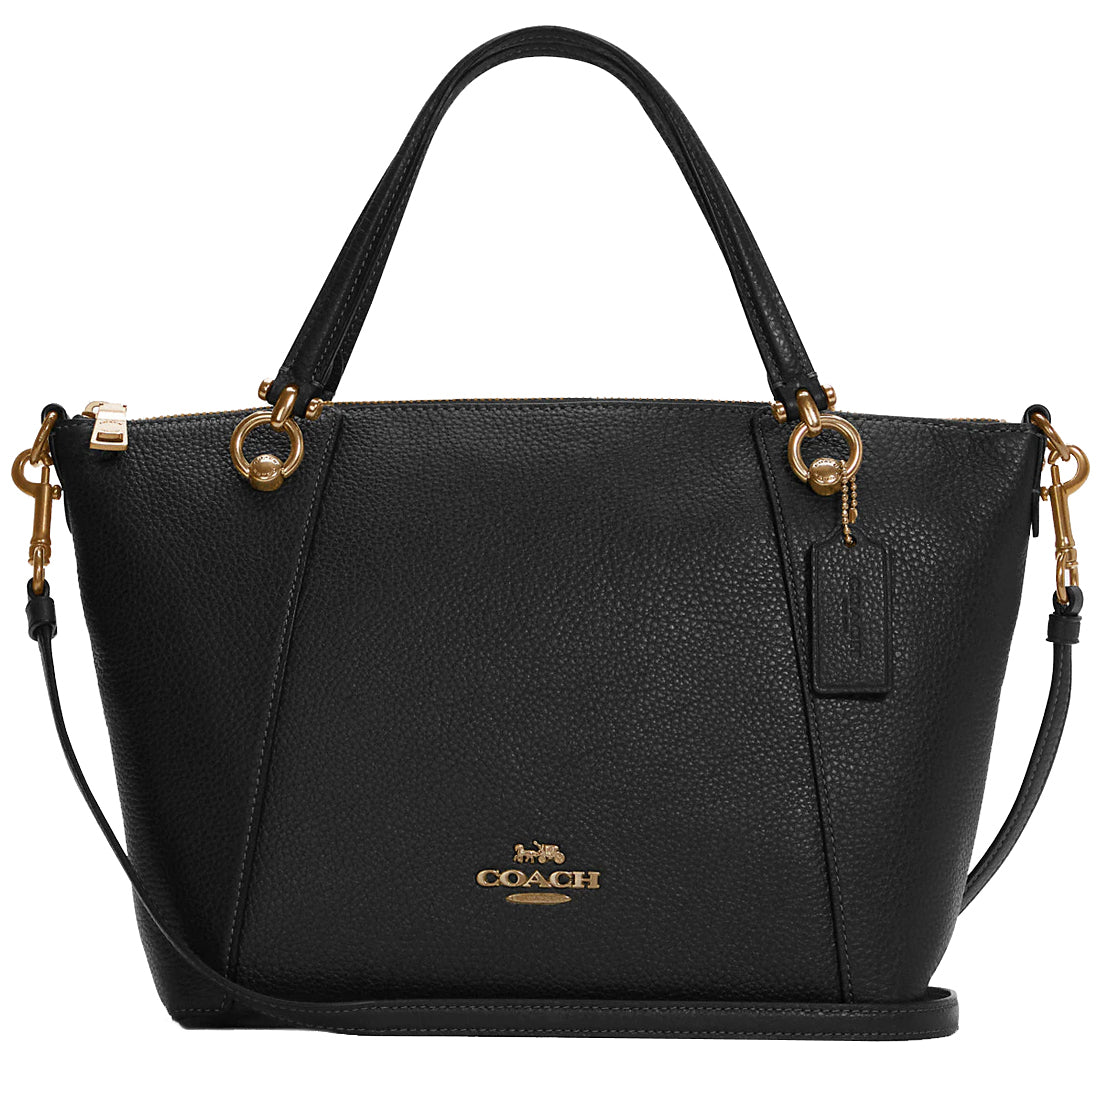 Buy Coach Kacey Satchel Bag in Black C6229 Online in Singapore ...